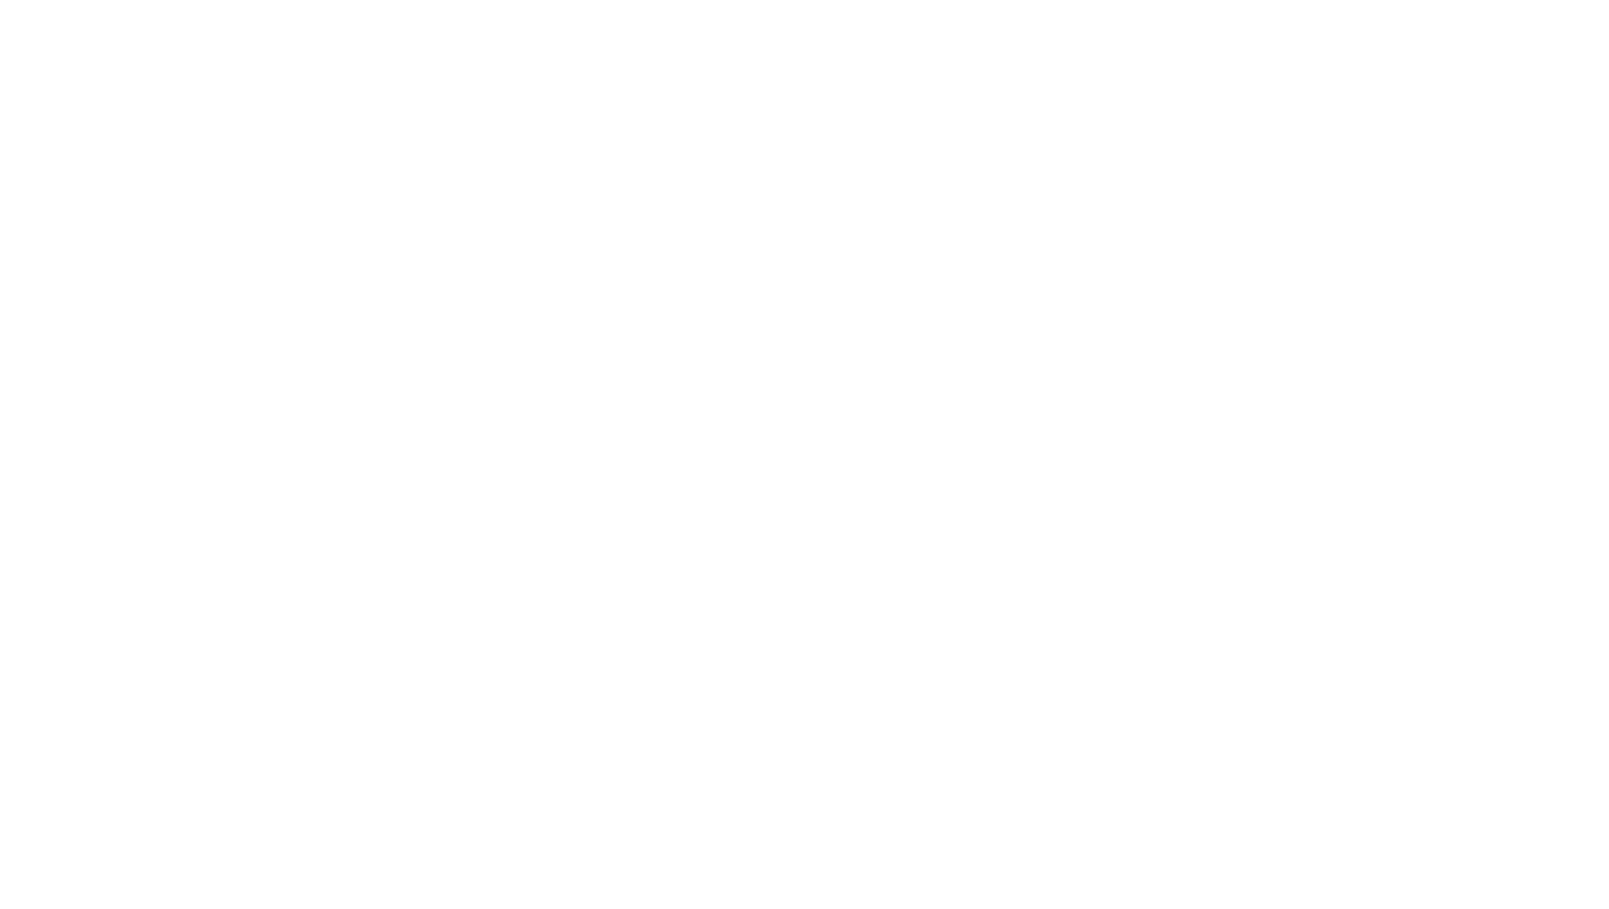 Кейс сервиса BRANDNATION - Логотип и фирменный стиль пивоварни. Брендинговое агентство BRANDNATION в Москве и Санкт-Петербурге. Услуги: разработка логотипа и фирменного стиля, дизайн упаковки, брендбук, ребрендинг, разработка сайта.